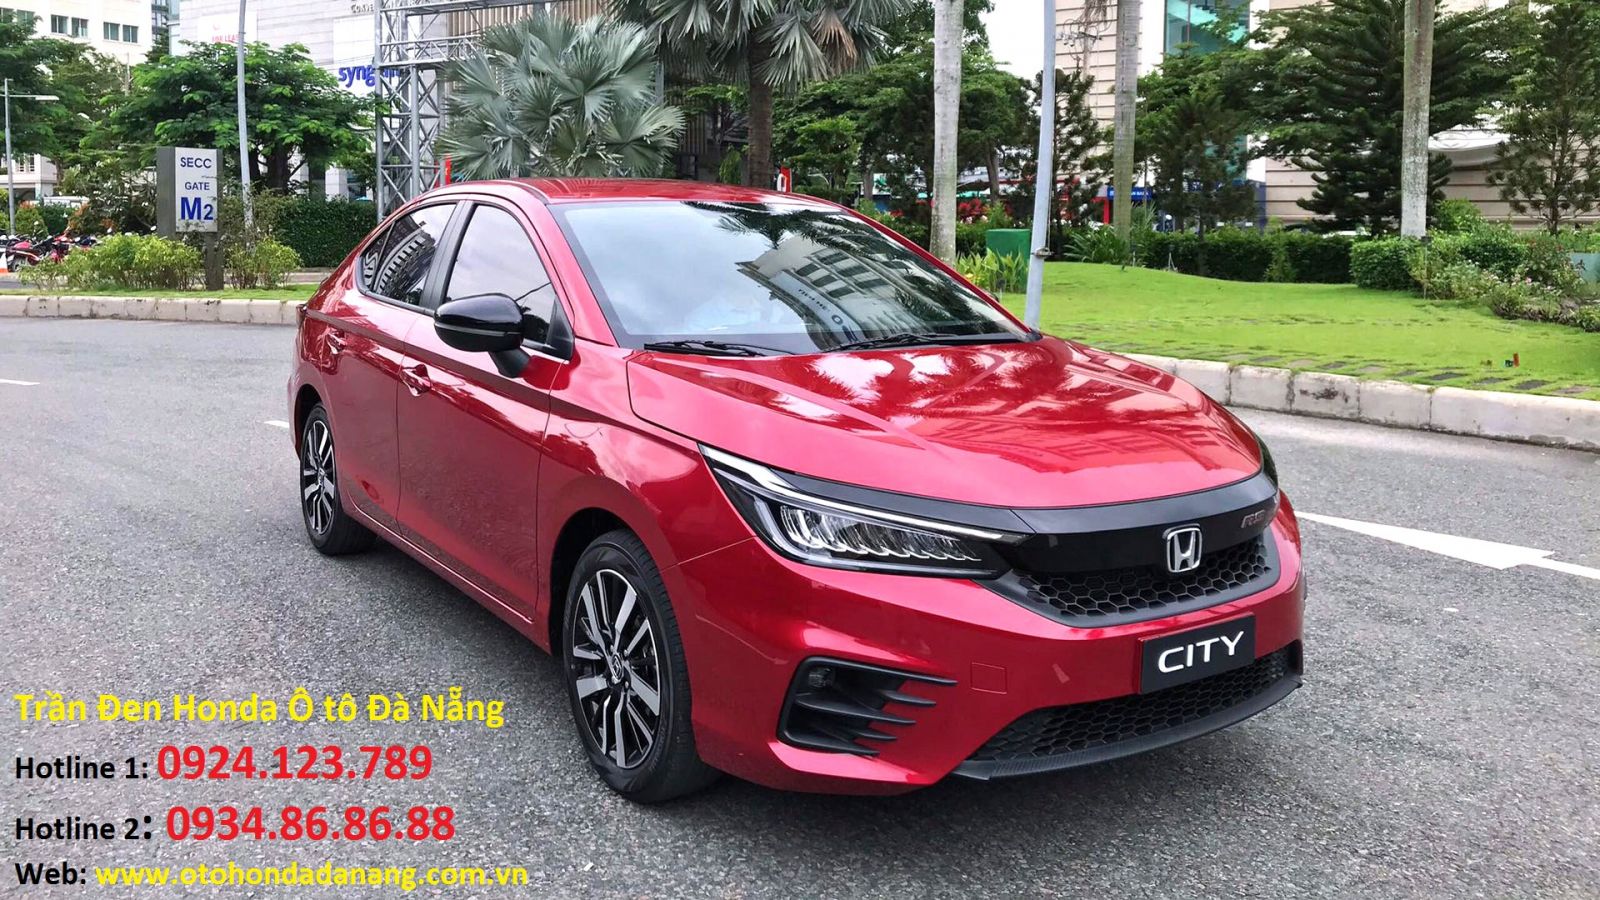 Honda City 2020 Trần Đen 0934868688